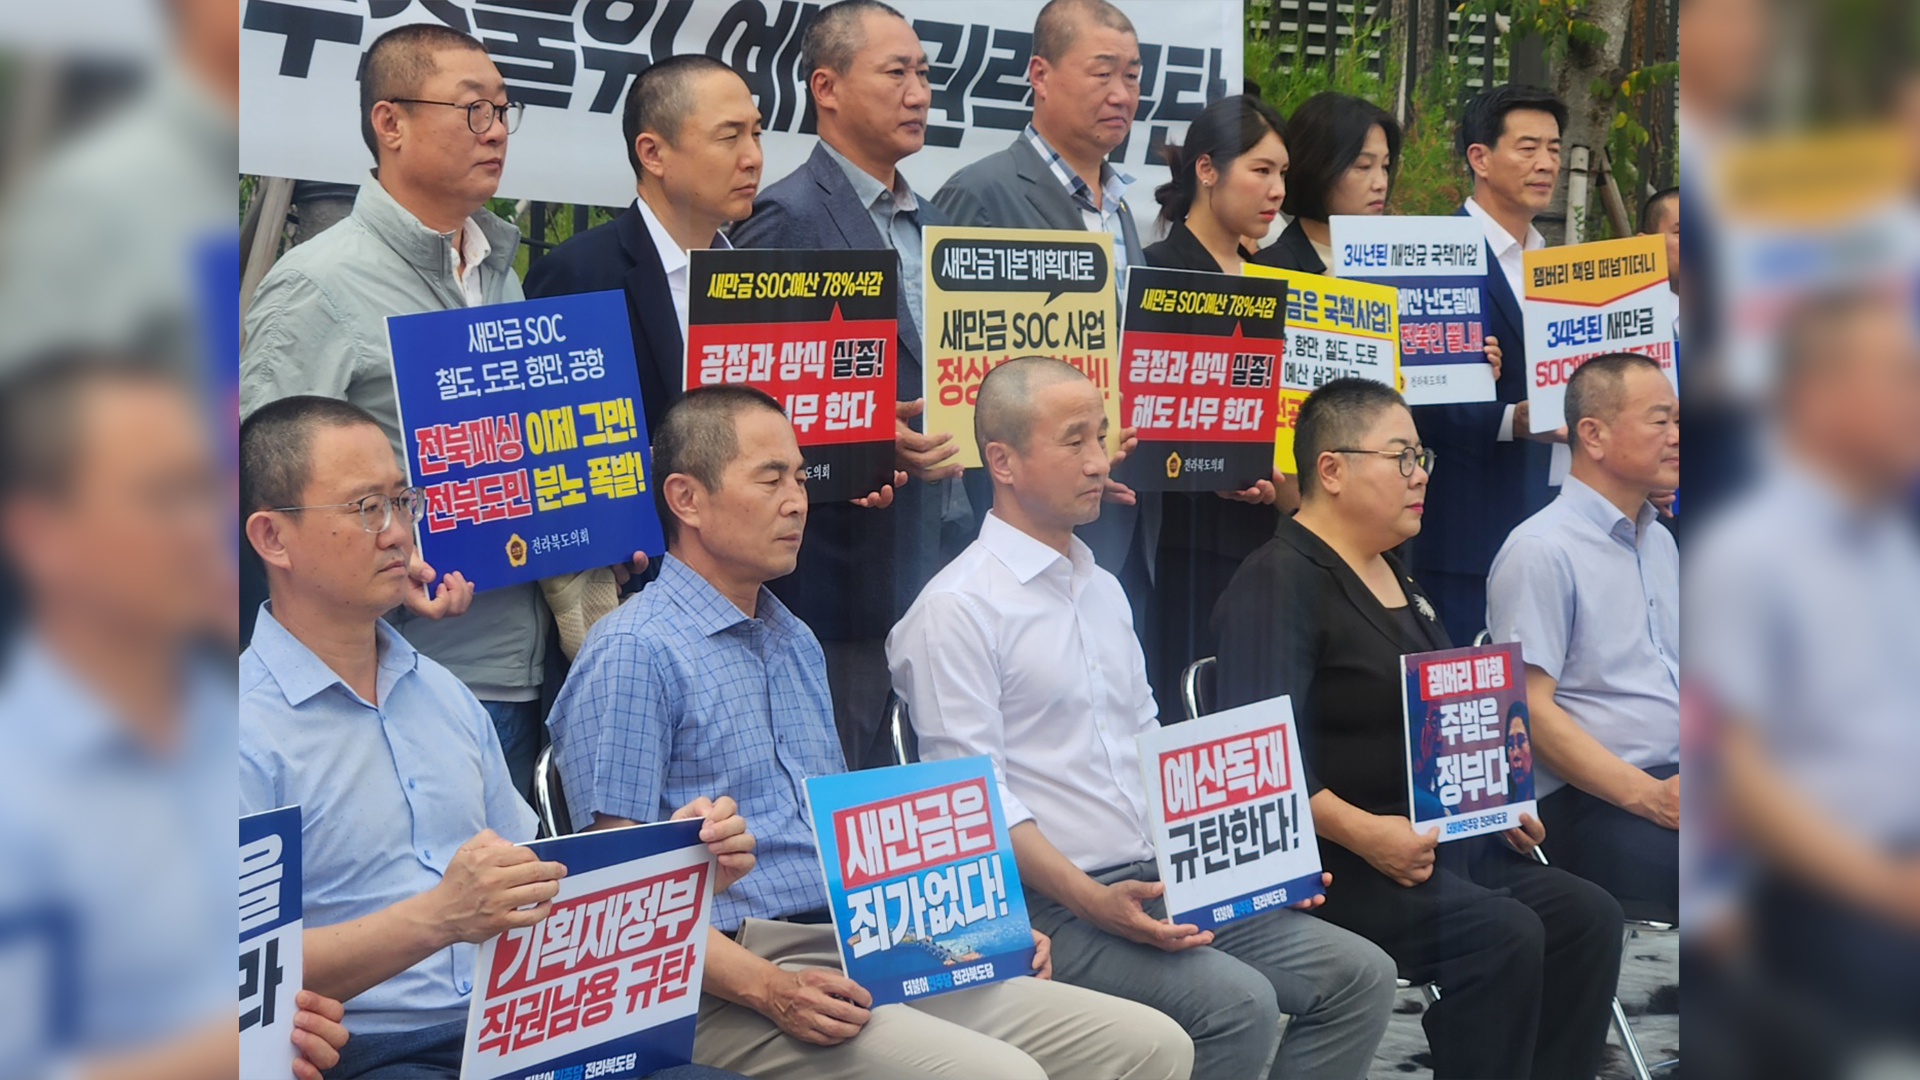 한병도 민주당 전북도당위원장과 도의원 8명이 12일 기재부 앞에서 새만금 예산 복구를 요구하며 삭발했다.